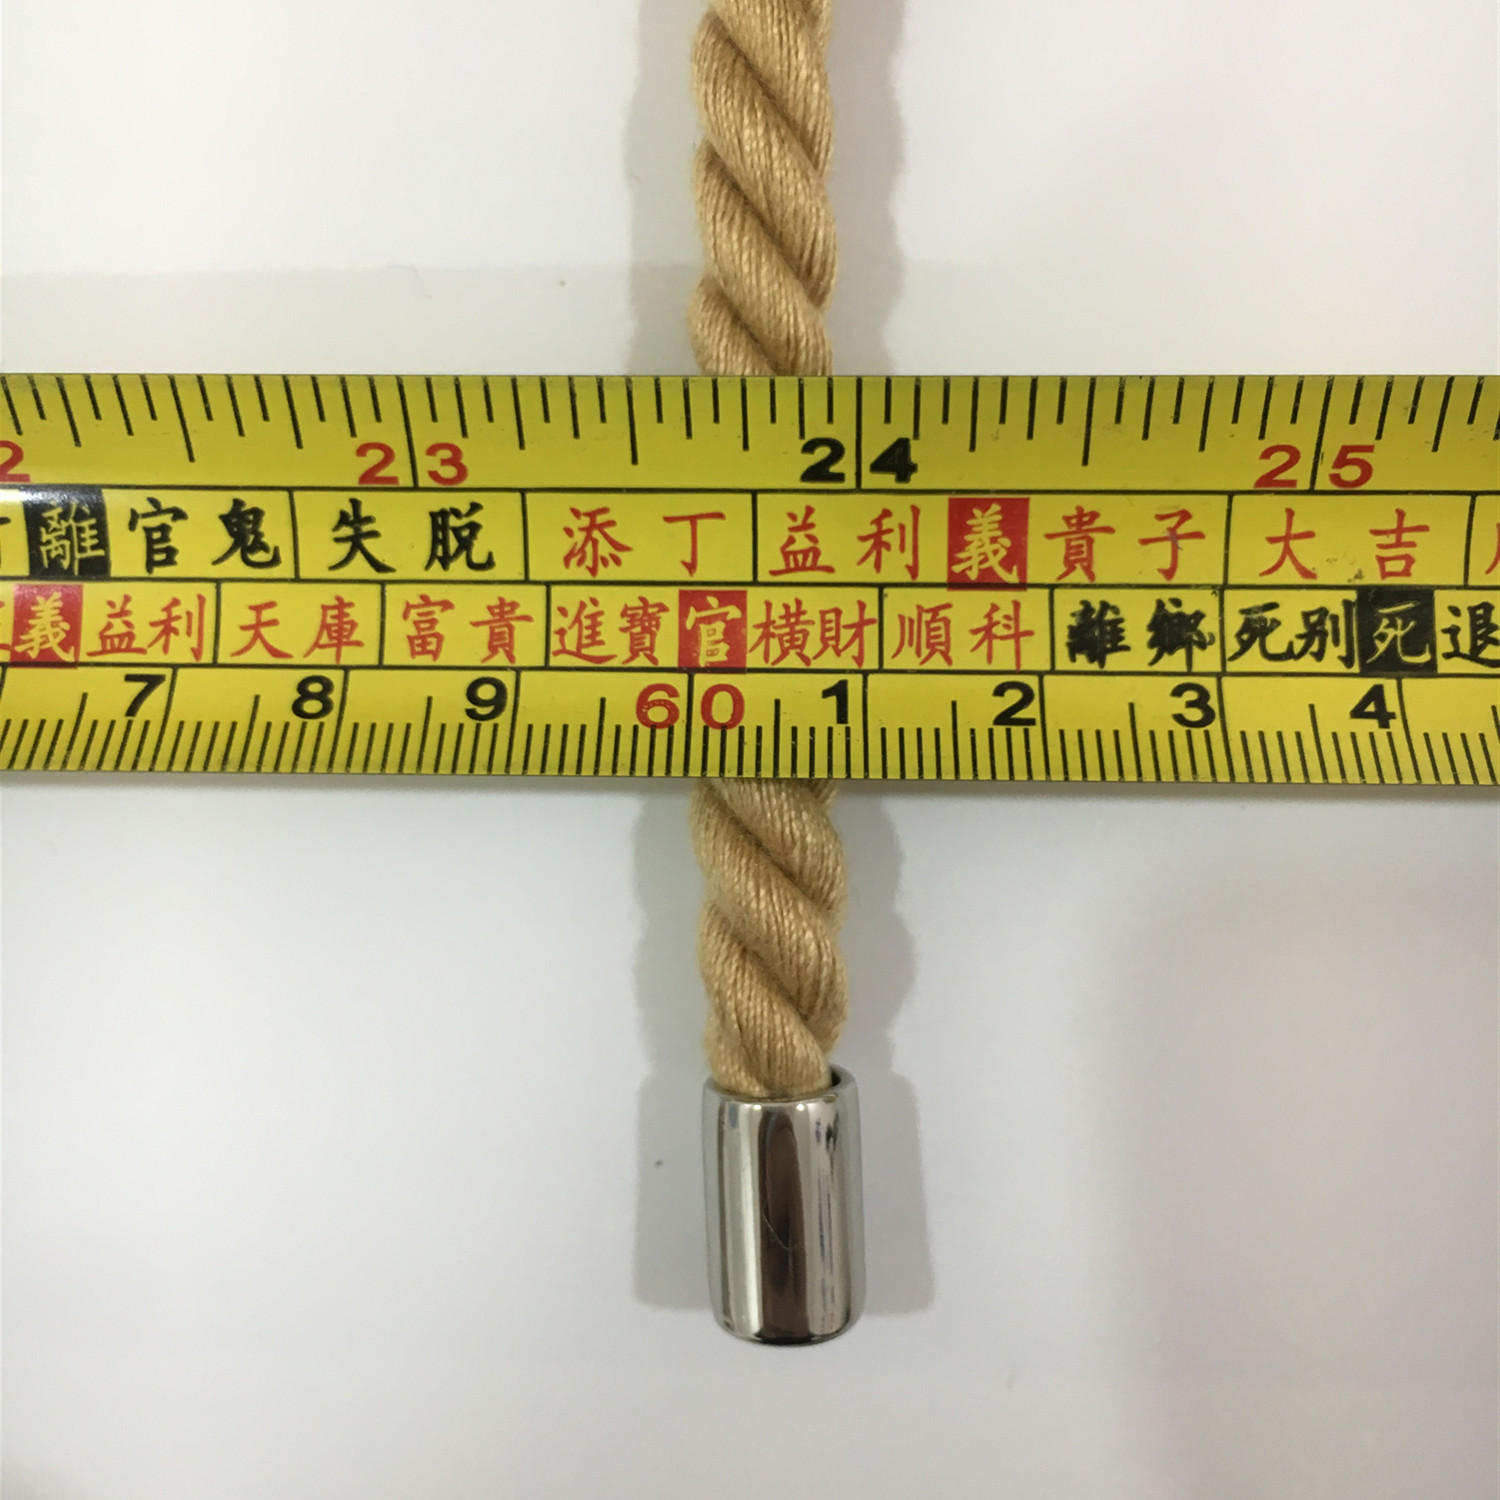 Corda de algodão japonesa de alta qualidade, bondage, brinquedos sexuais para homens e mulheres, jogos adultos, bdsm, restrição corporal, escravo, cosplay, flertar